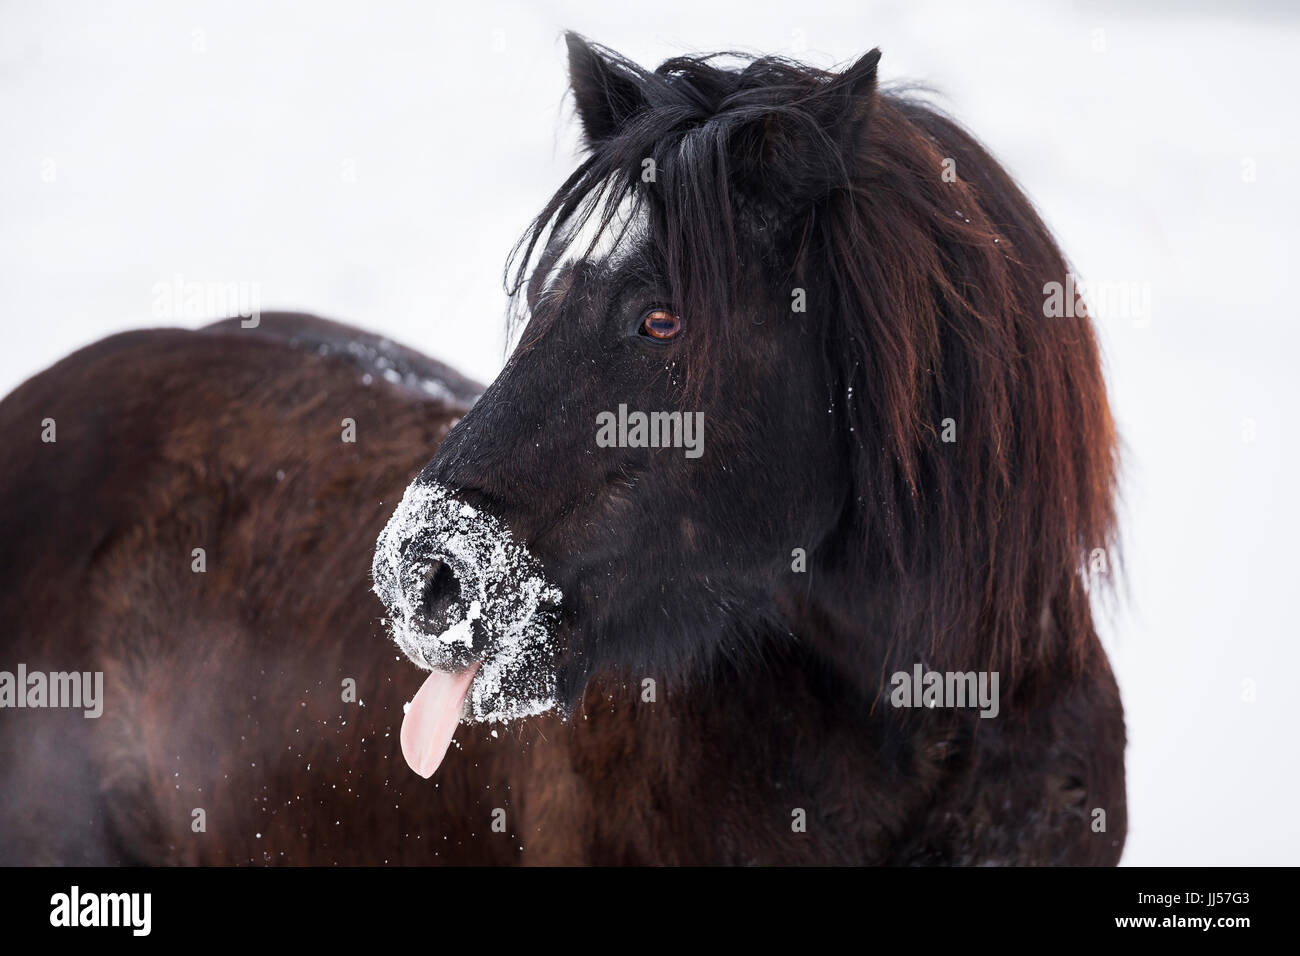 Bardigiano, Bardi Horse. Portrait of black gelding showing tongue. Germany Stock Photo